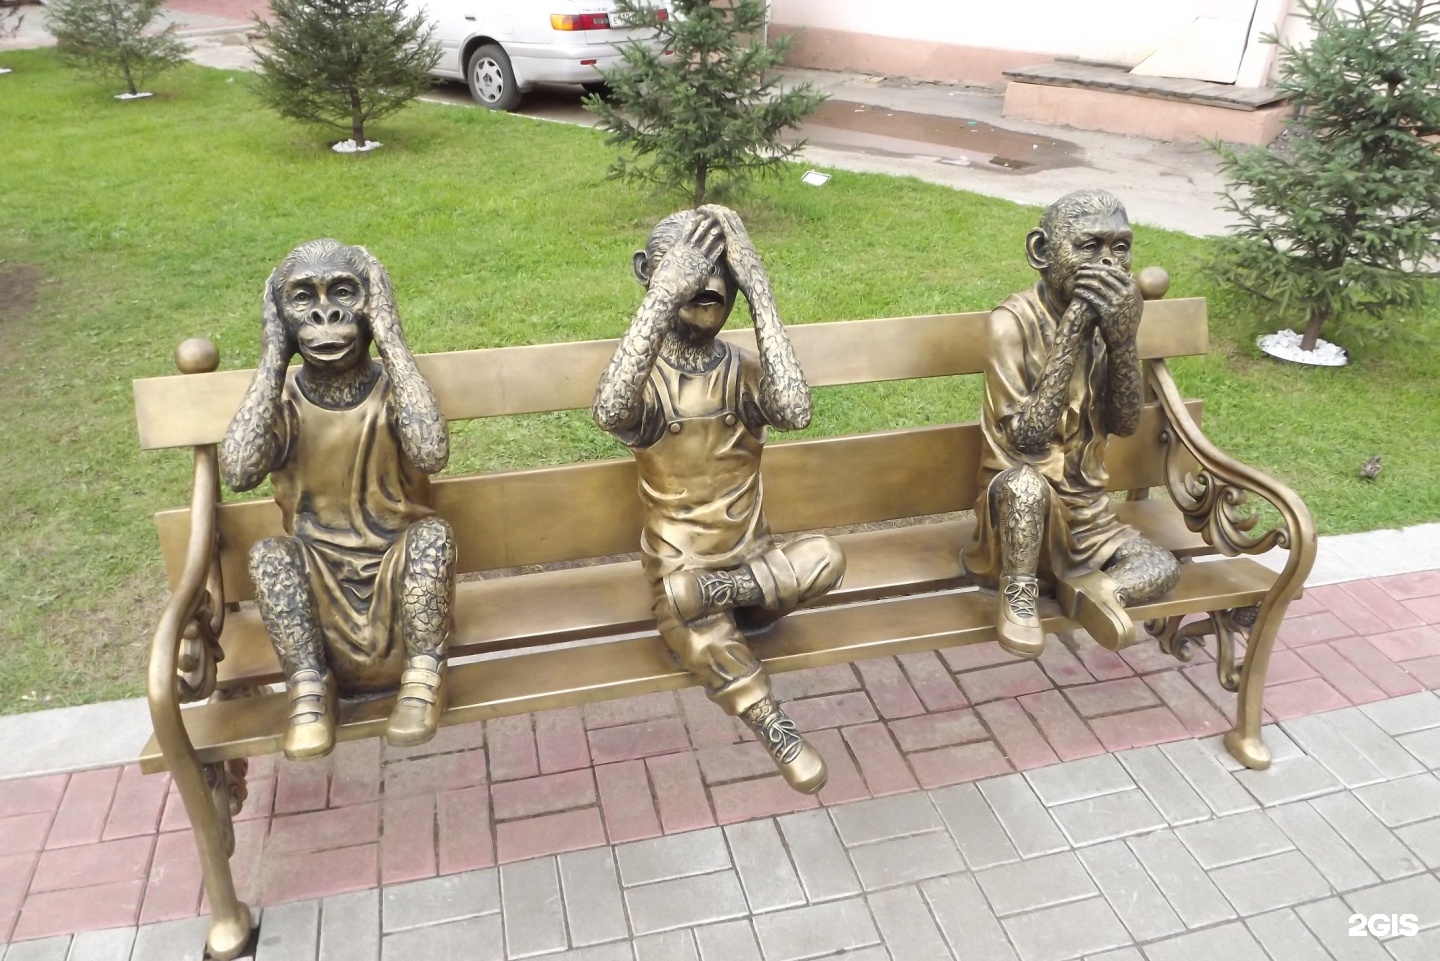 Три обезьяны не вижу не слышу не говорю фото